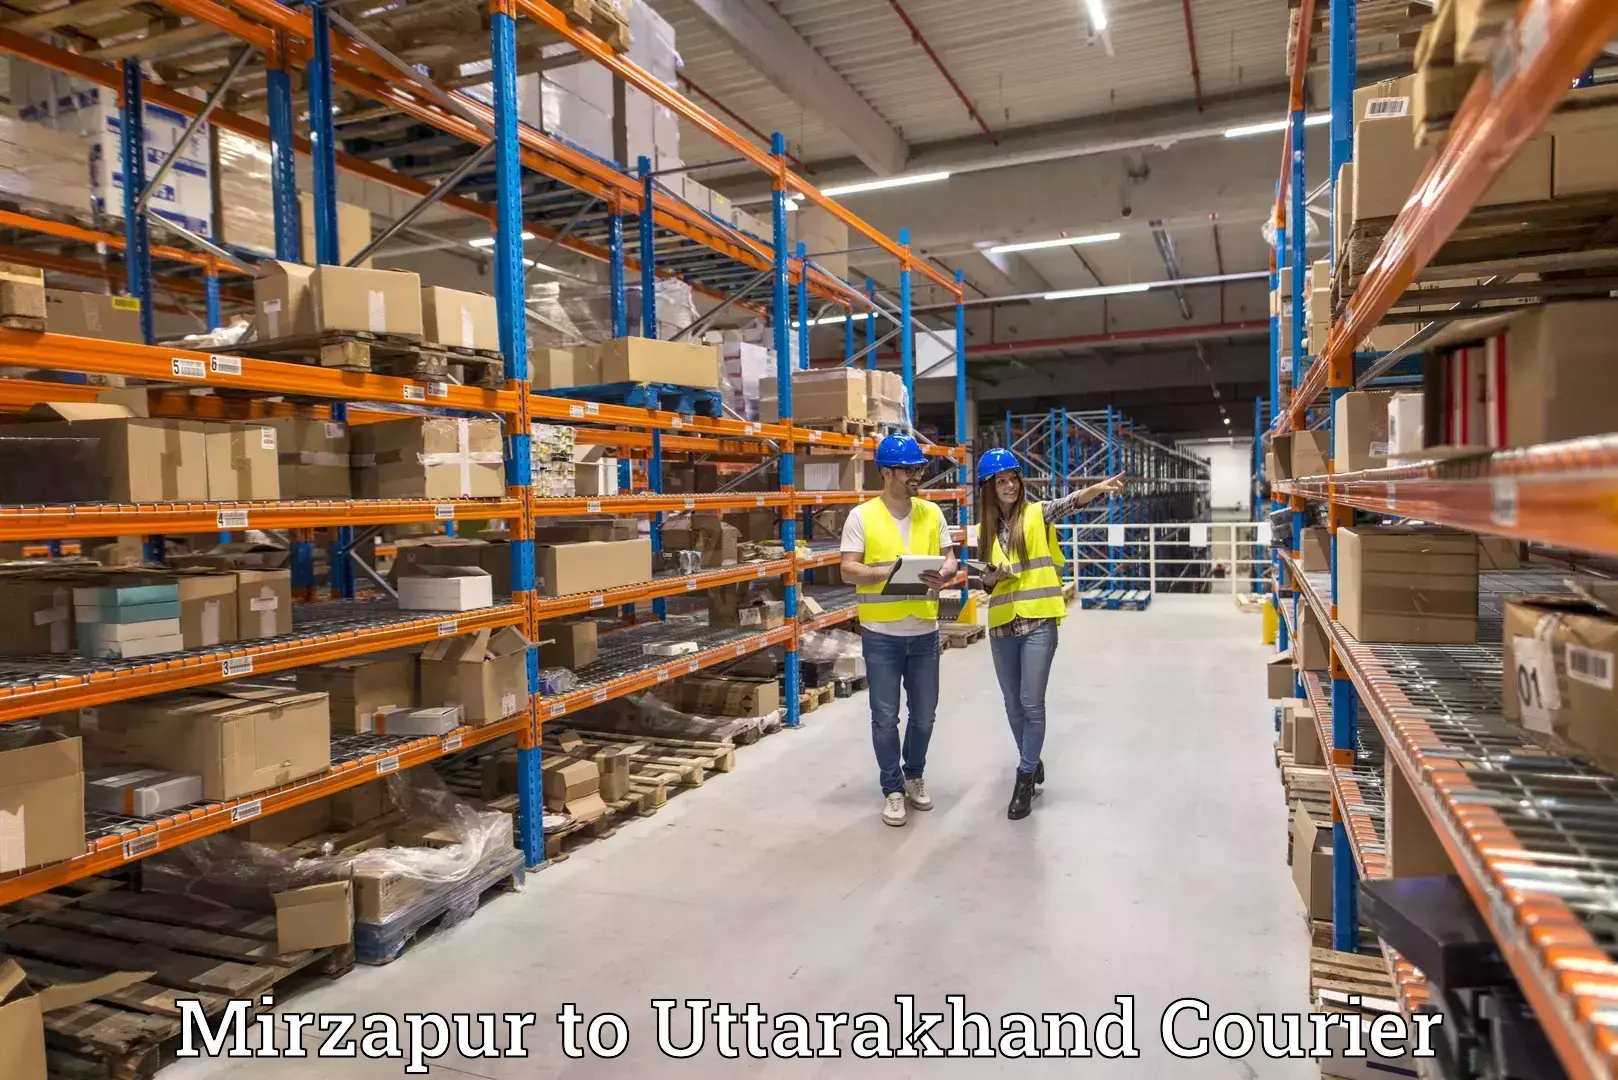 High-speed parcel service Mirzapur to Uttarakhand